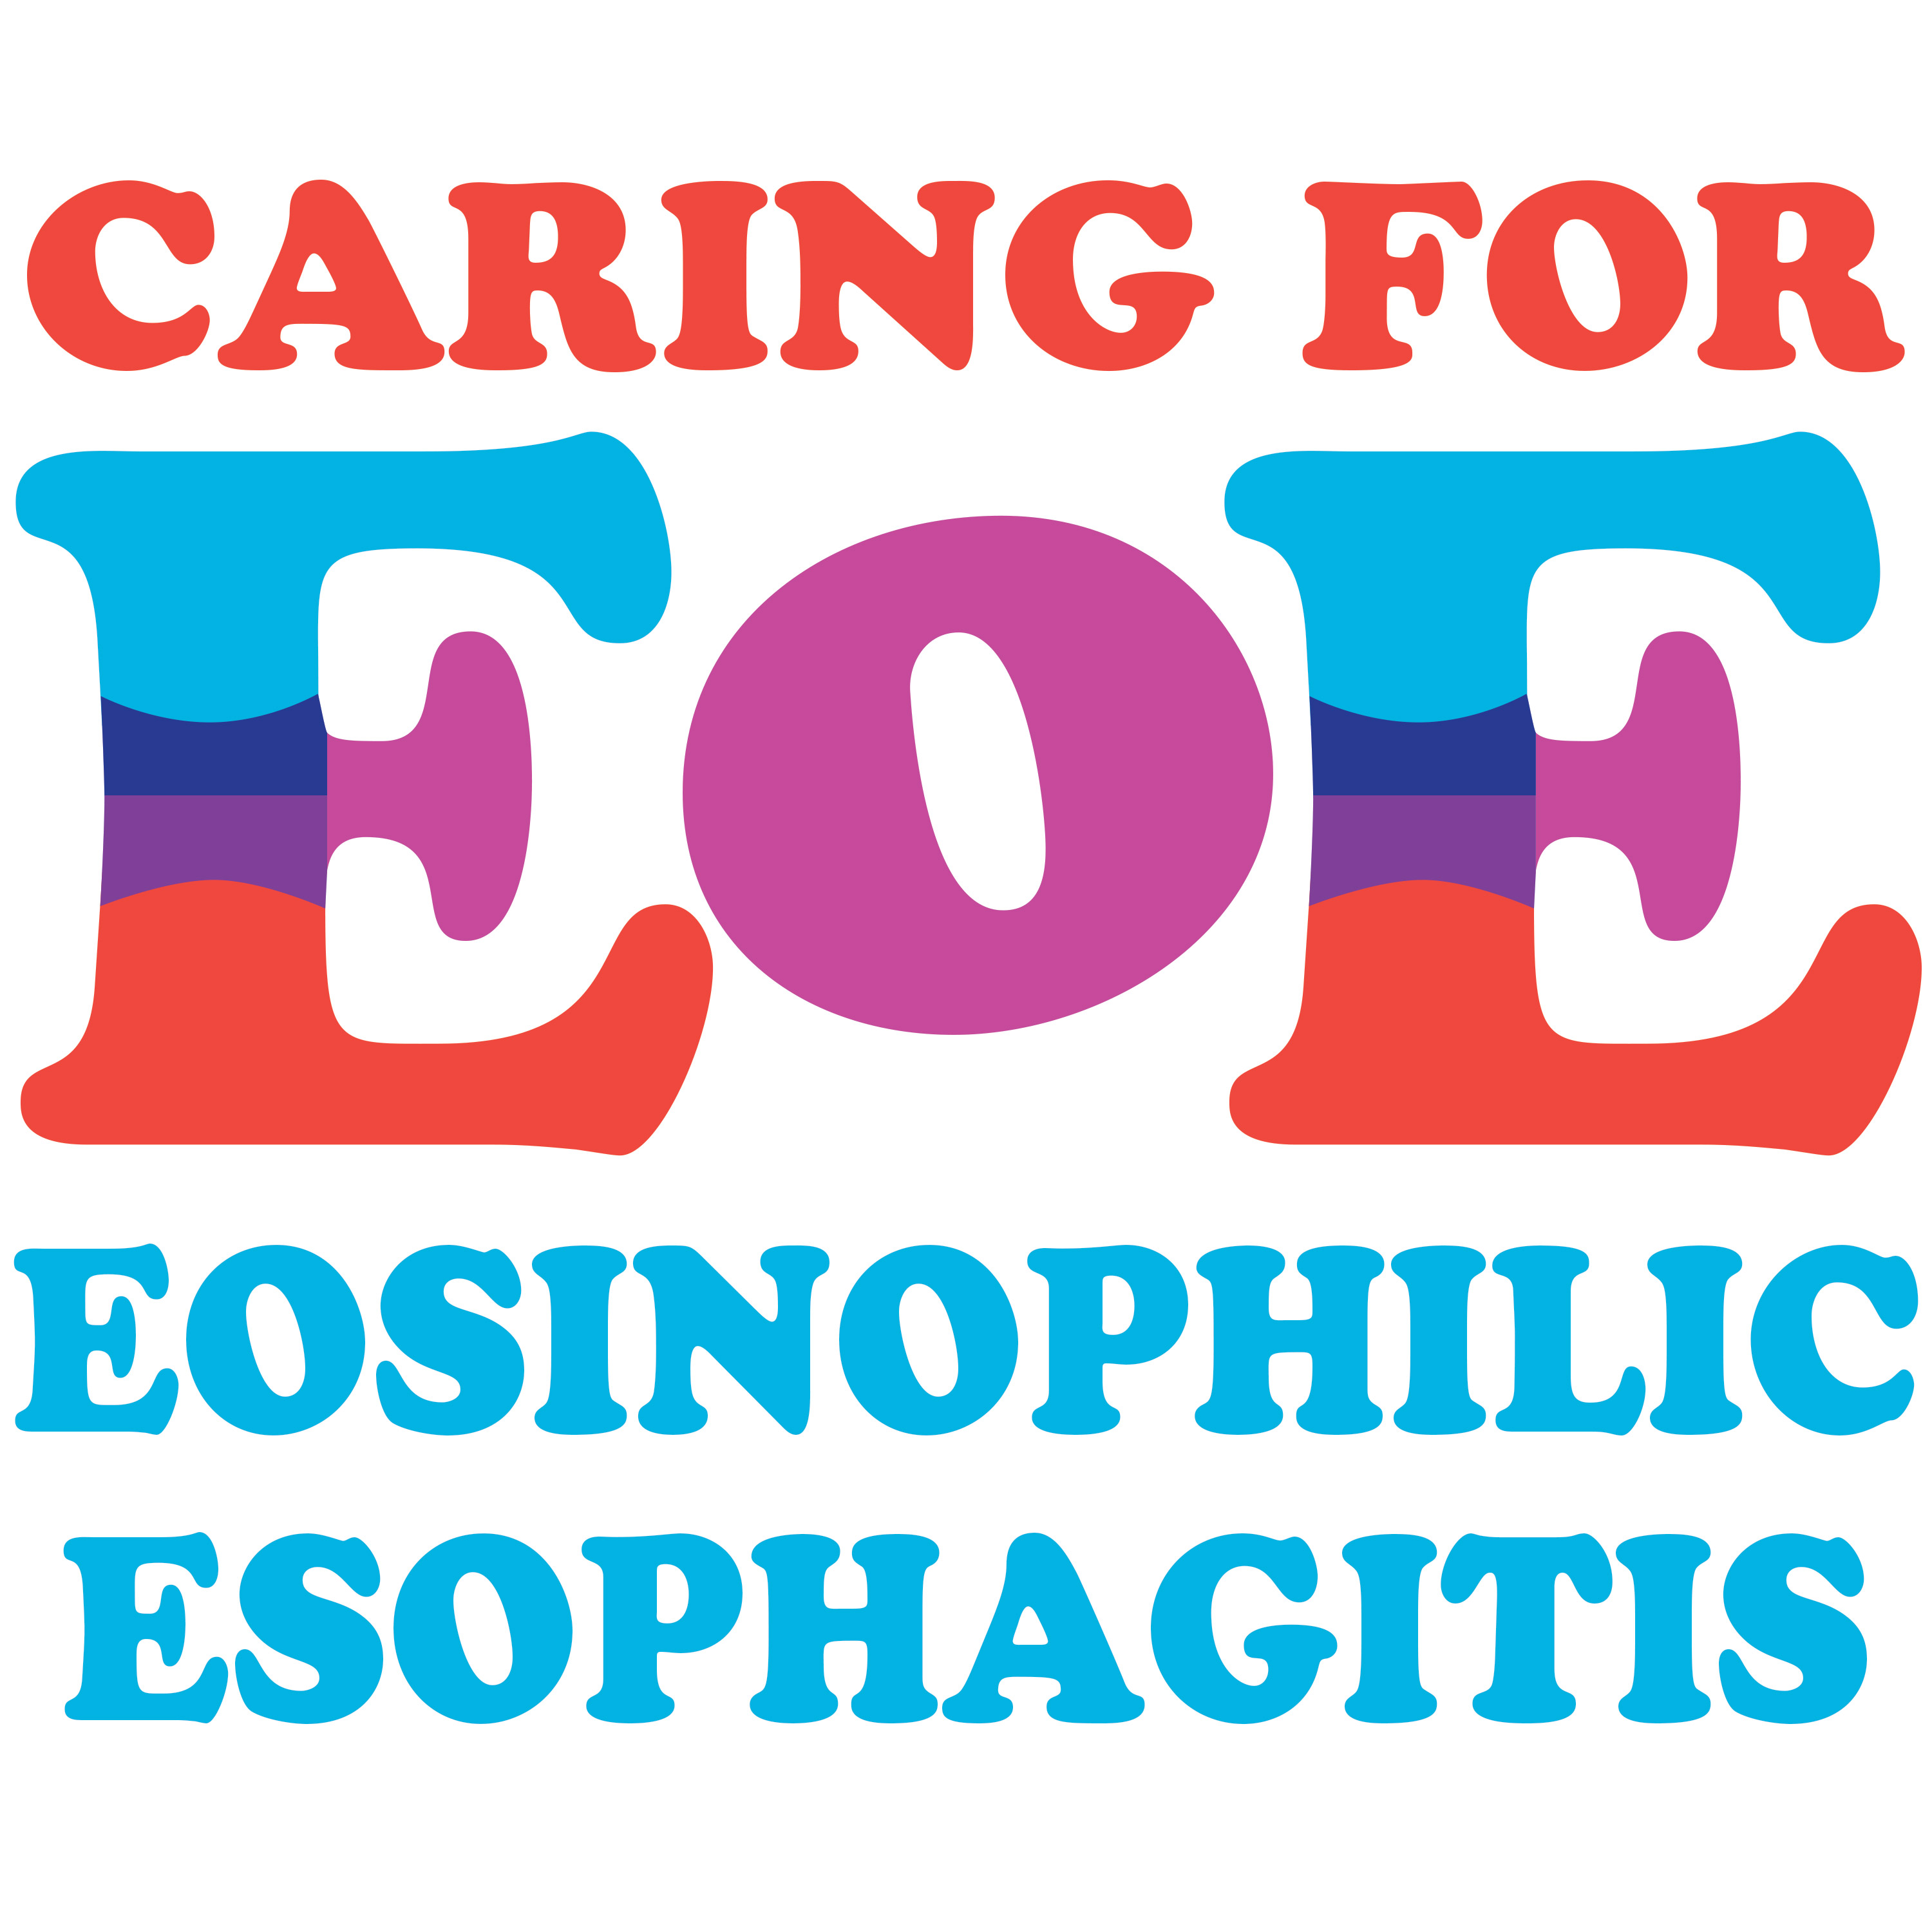 Caring for EoE (Eosinophilic Esophagitis)